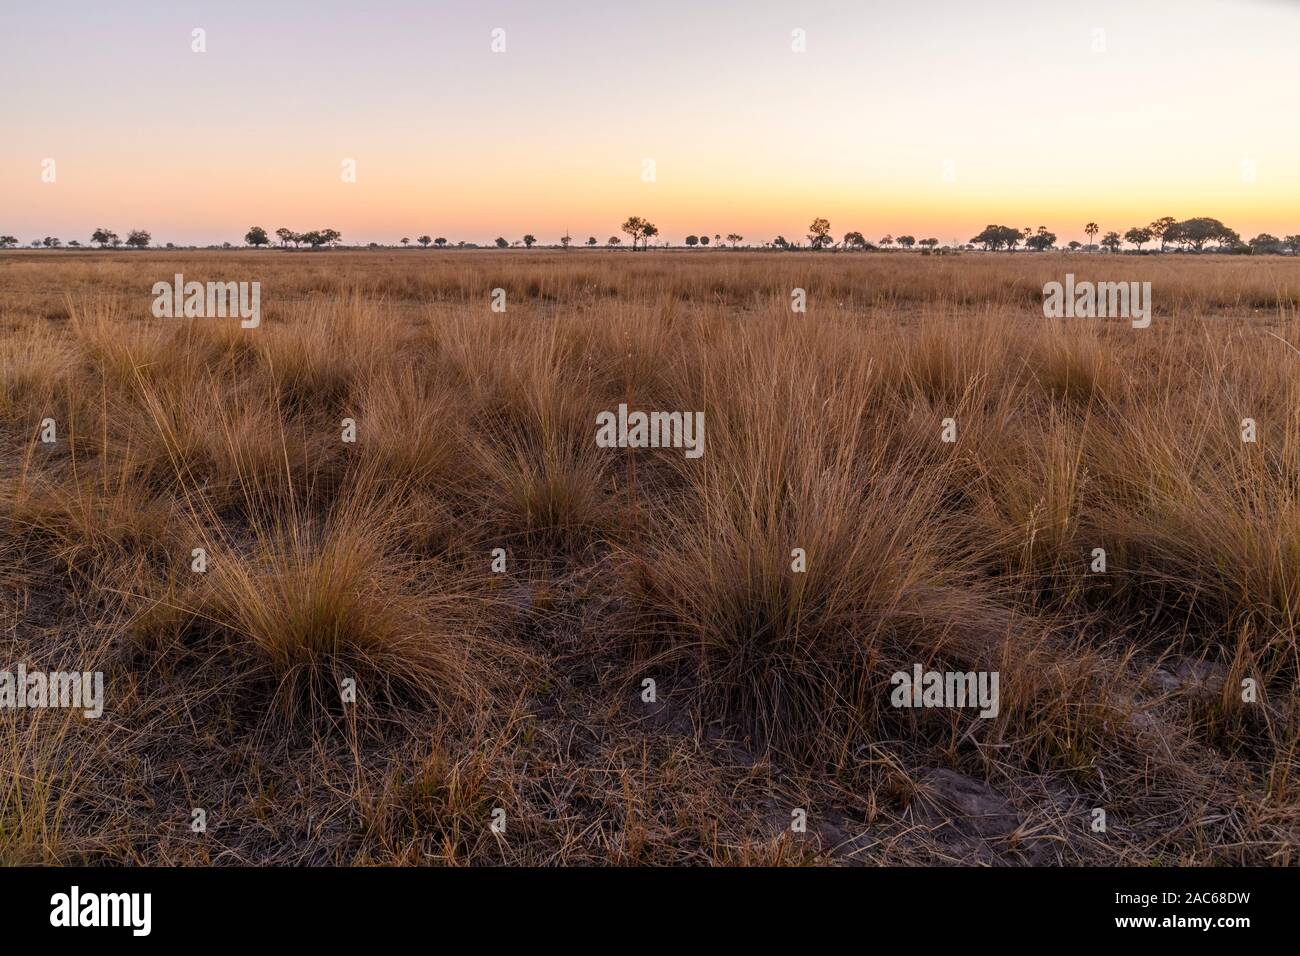 Plaines herbeuses au coucher du soleil, Macatoo, Delta d'Okavango, Botswana Banque D'Images